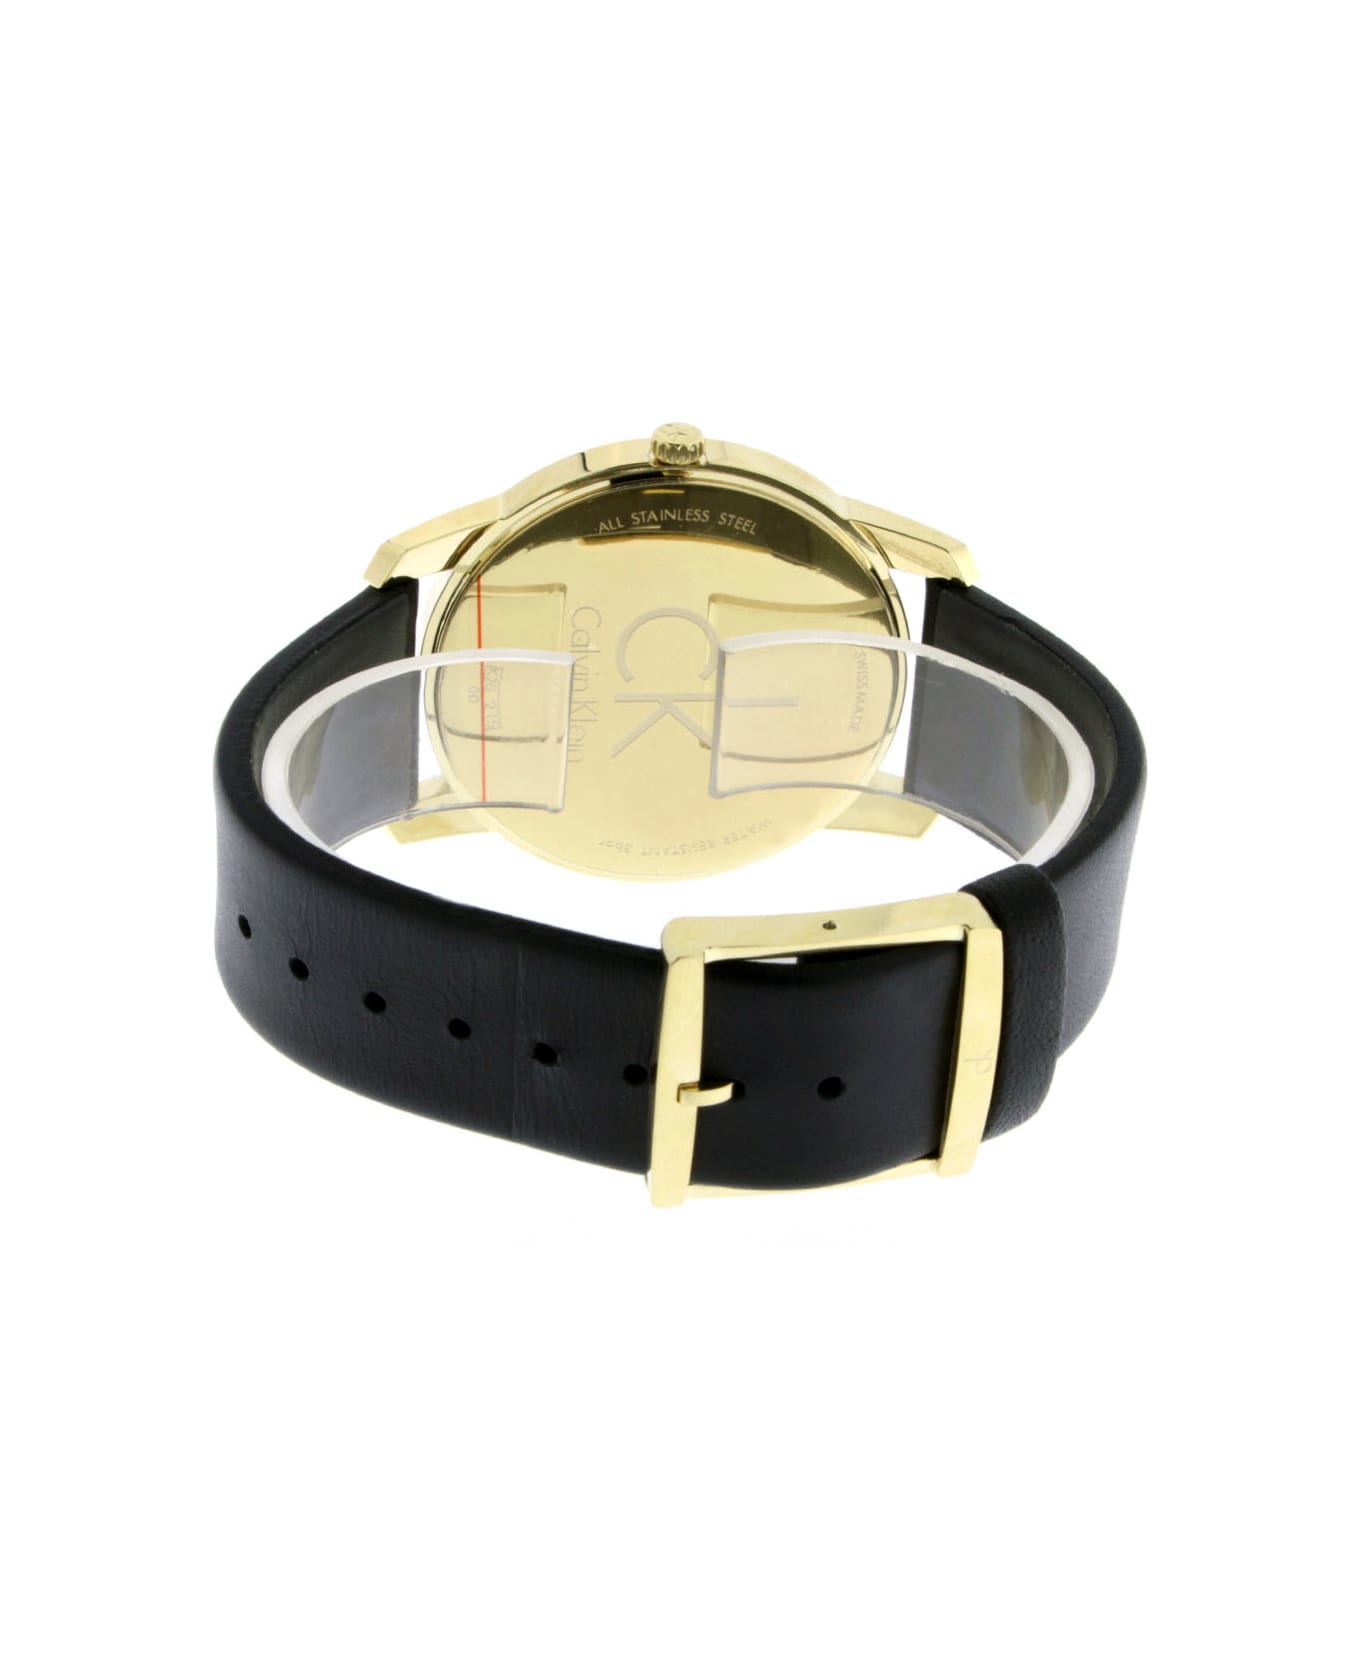 Calvin Klein K2g21520 City Watches